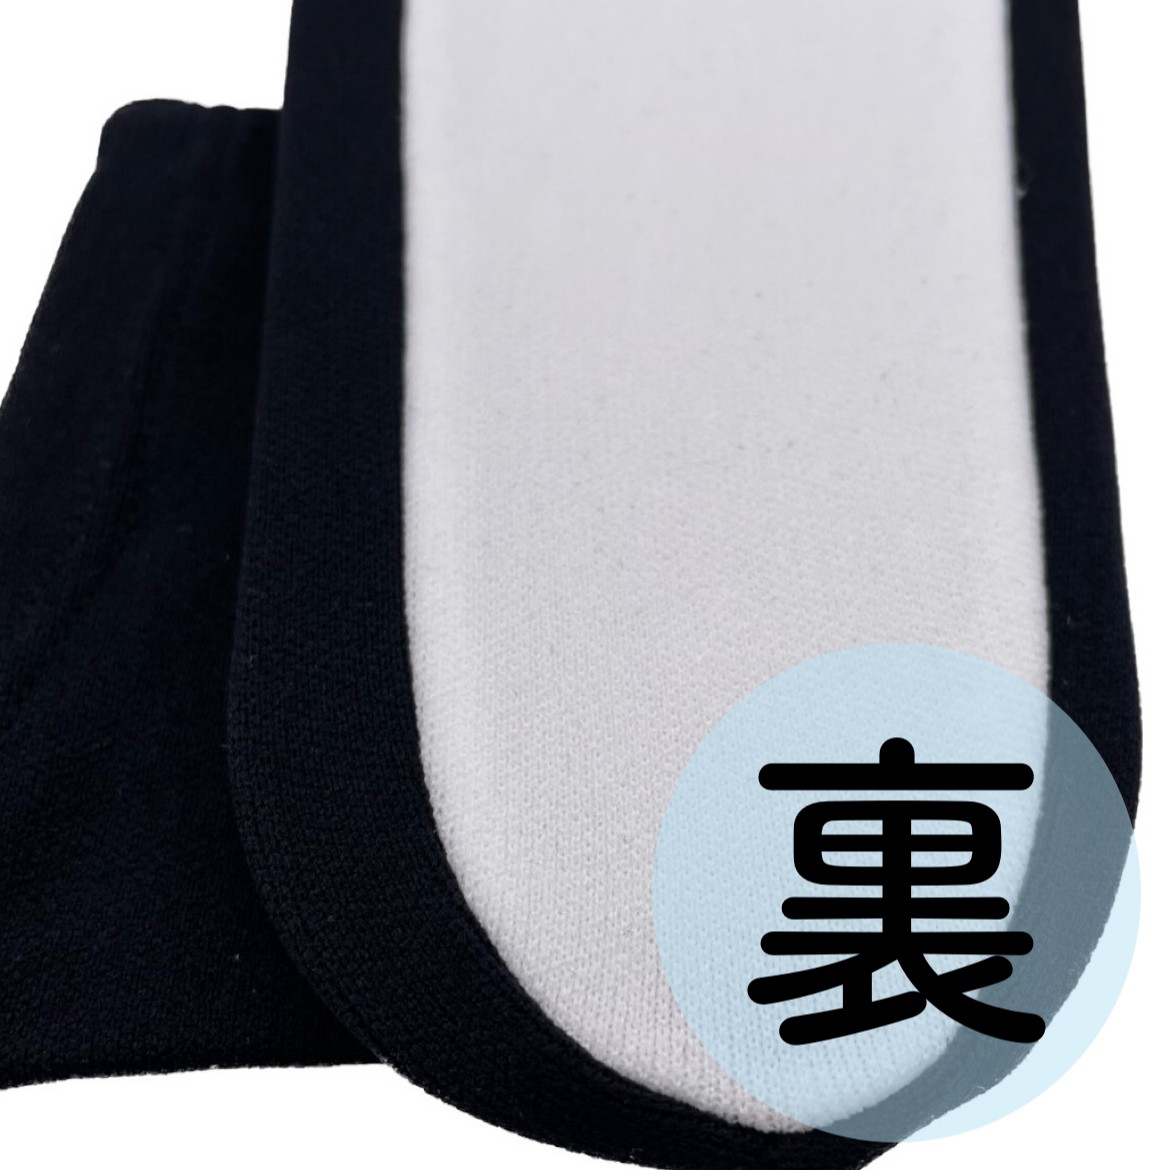  мужской tabi стрейч tabi обратная сторона белый чёрный сделано в Японии M размер L размер casual черный tabi покрытие джентльмен tabi все 2 размер клик post соответствует возможно 